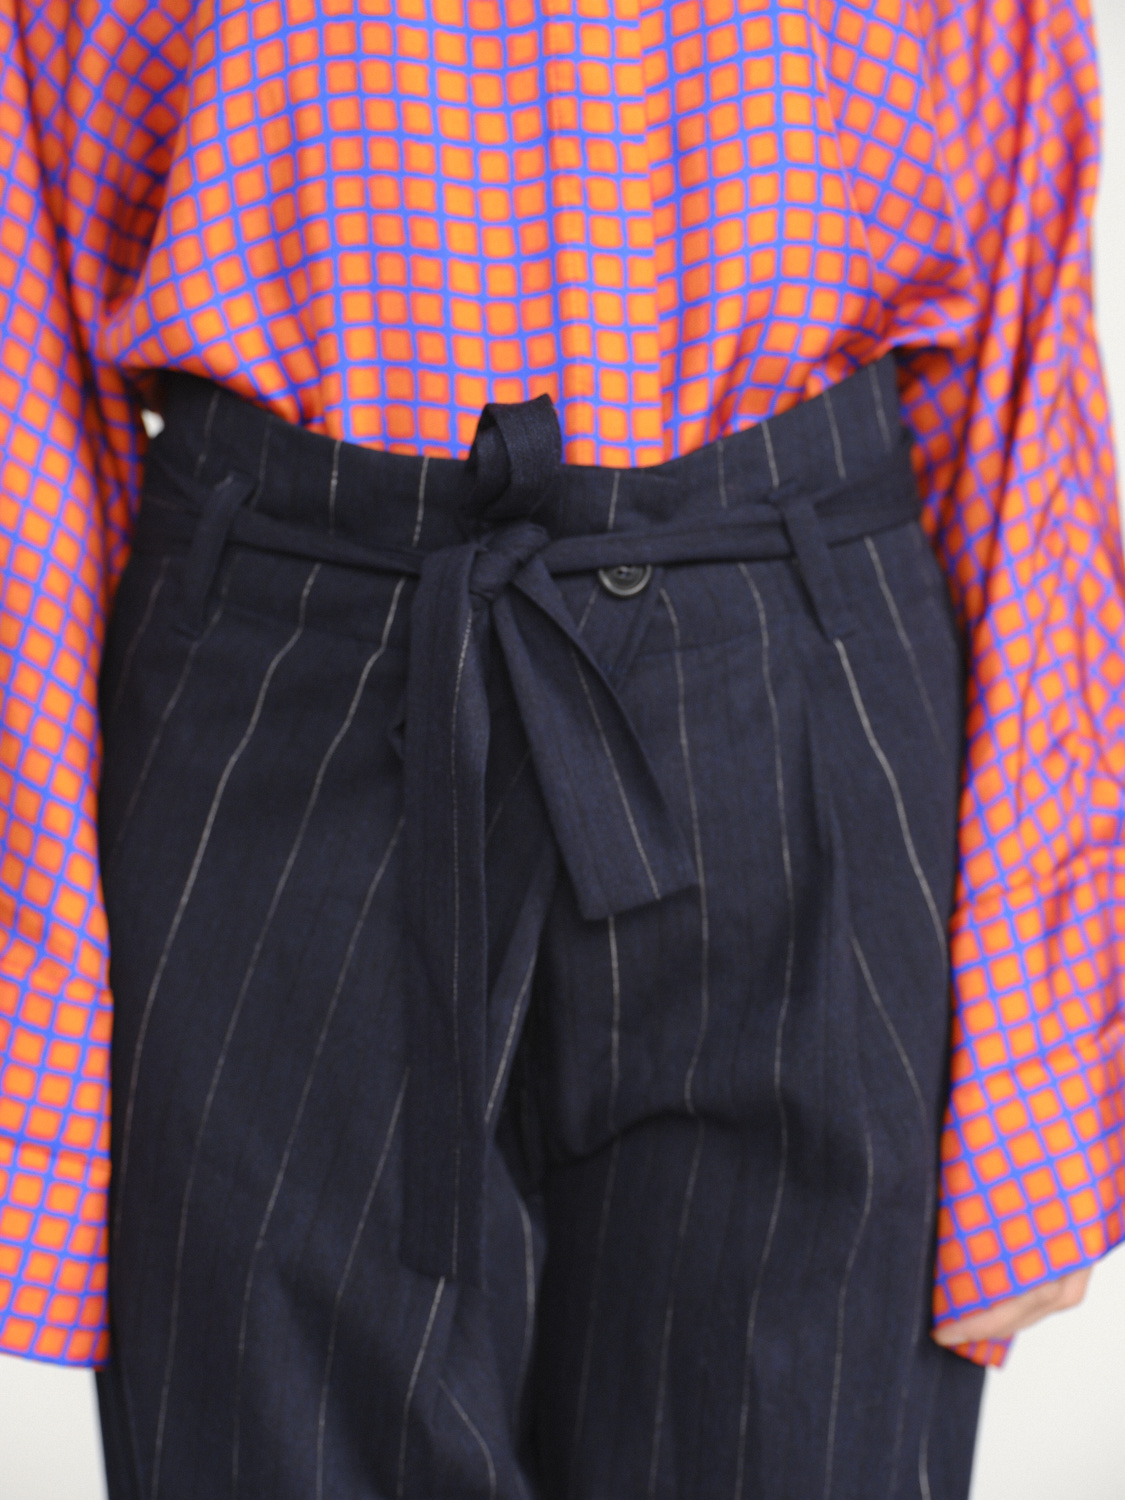 Odeeh Pantalon à rayures avec partie en laine vierge grau 38